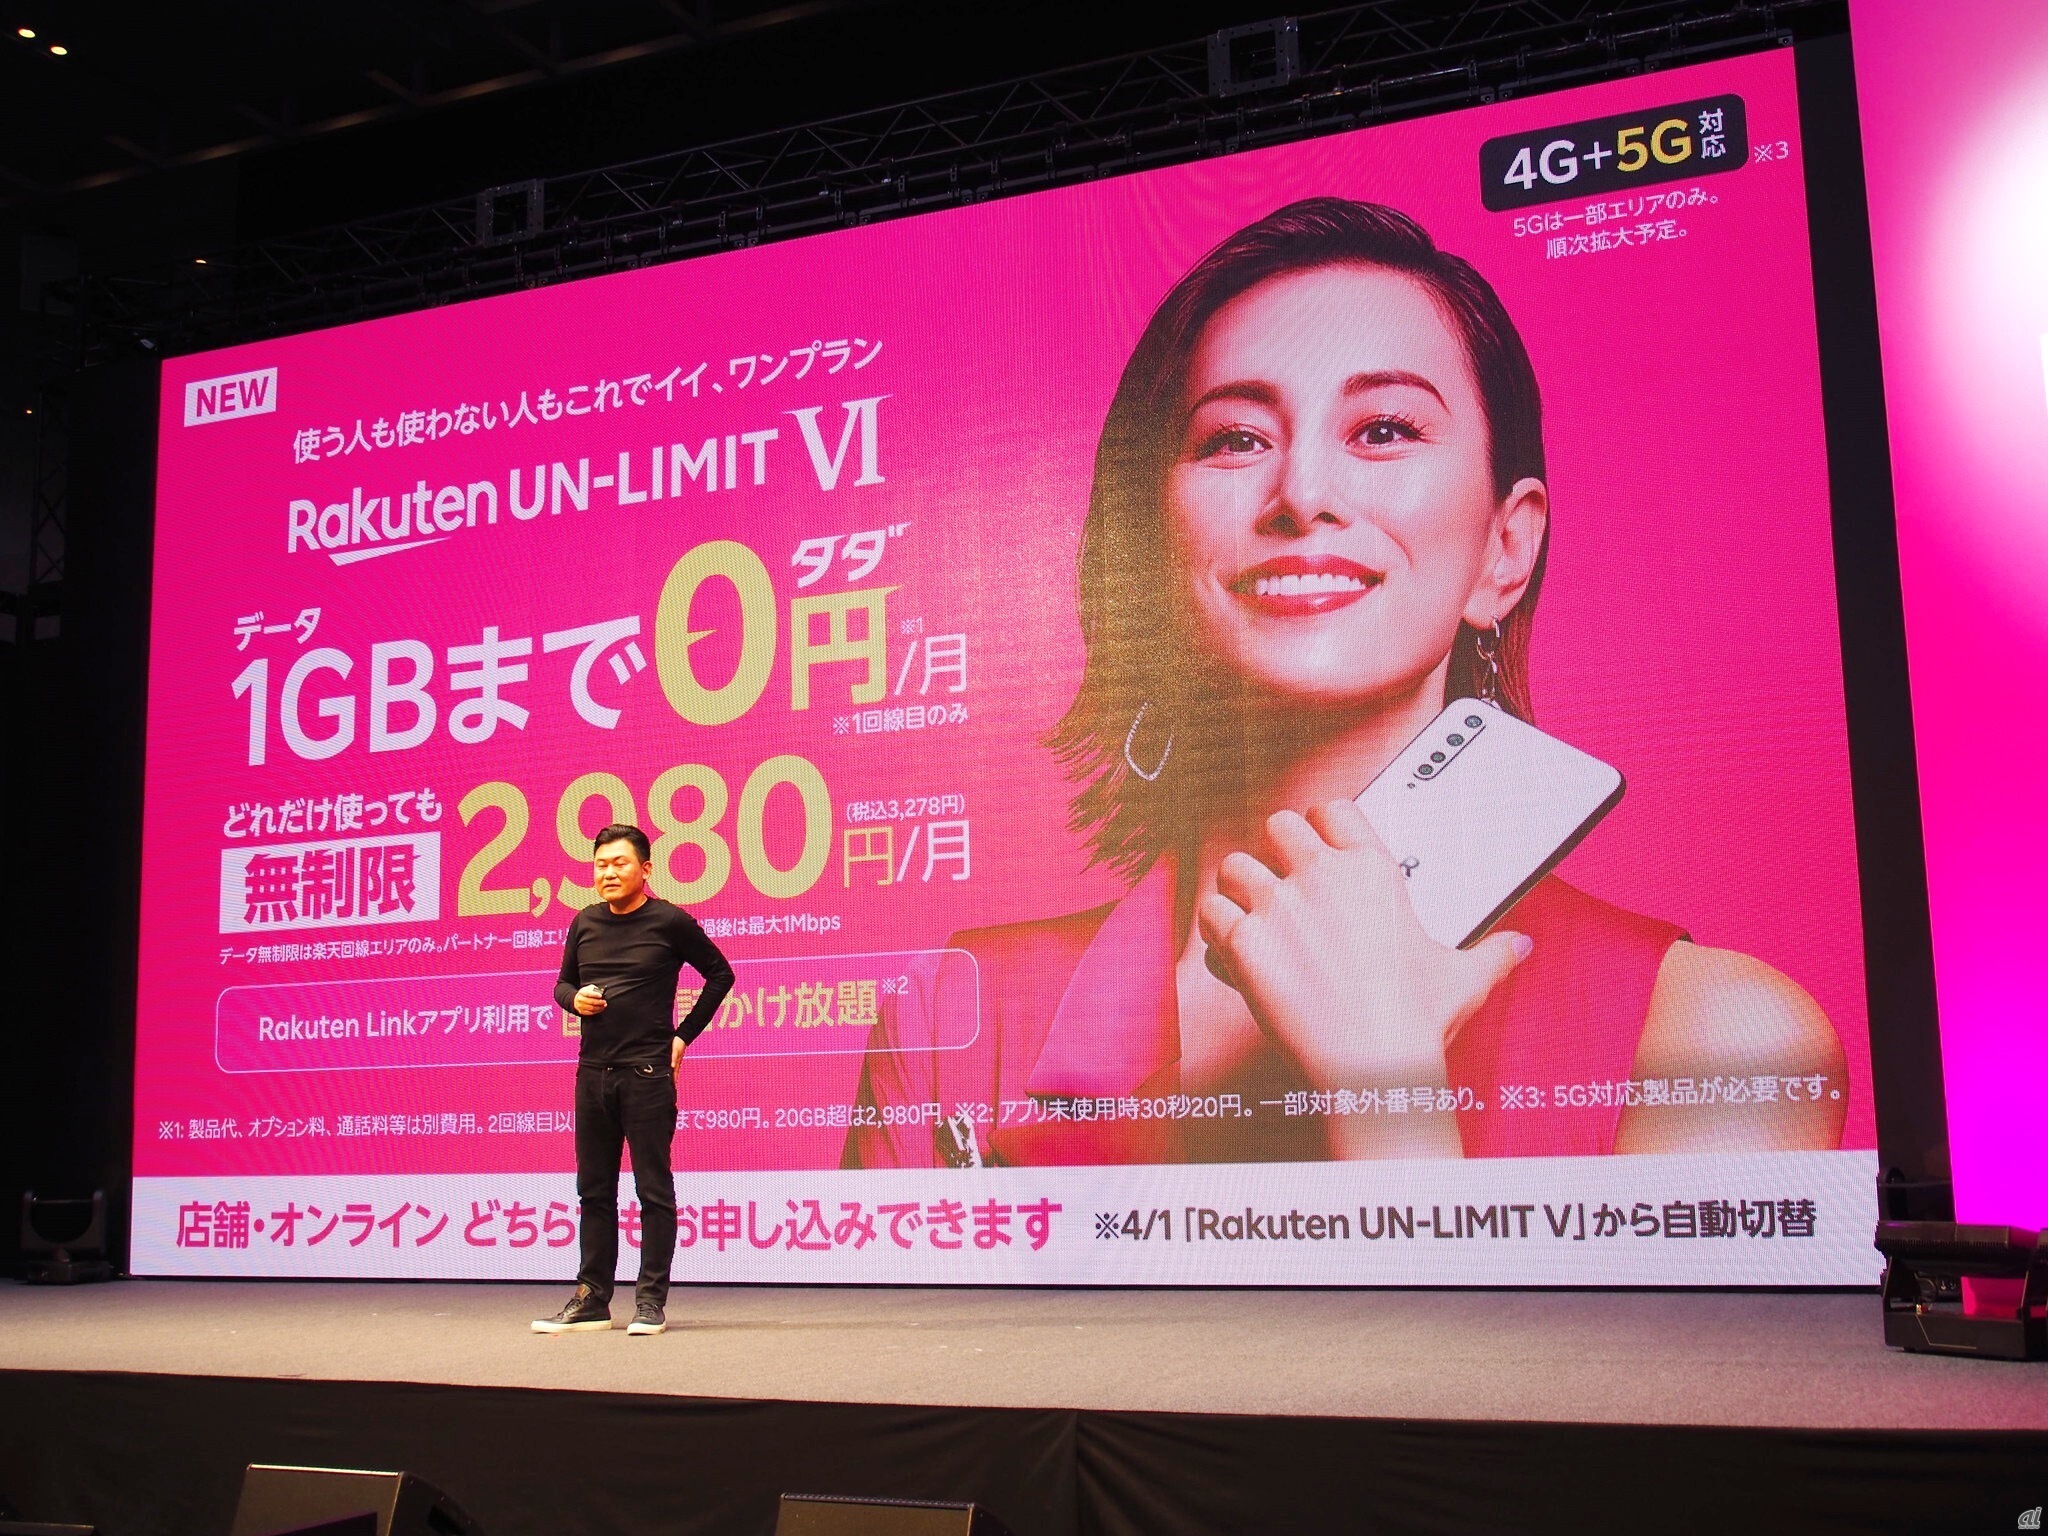 楽天モバイルは4月に料金プランを「Rakuten UN-LIMIT VI」にリニューアル、1GB以下であれば月額0円で利用できることが大きな話題となった